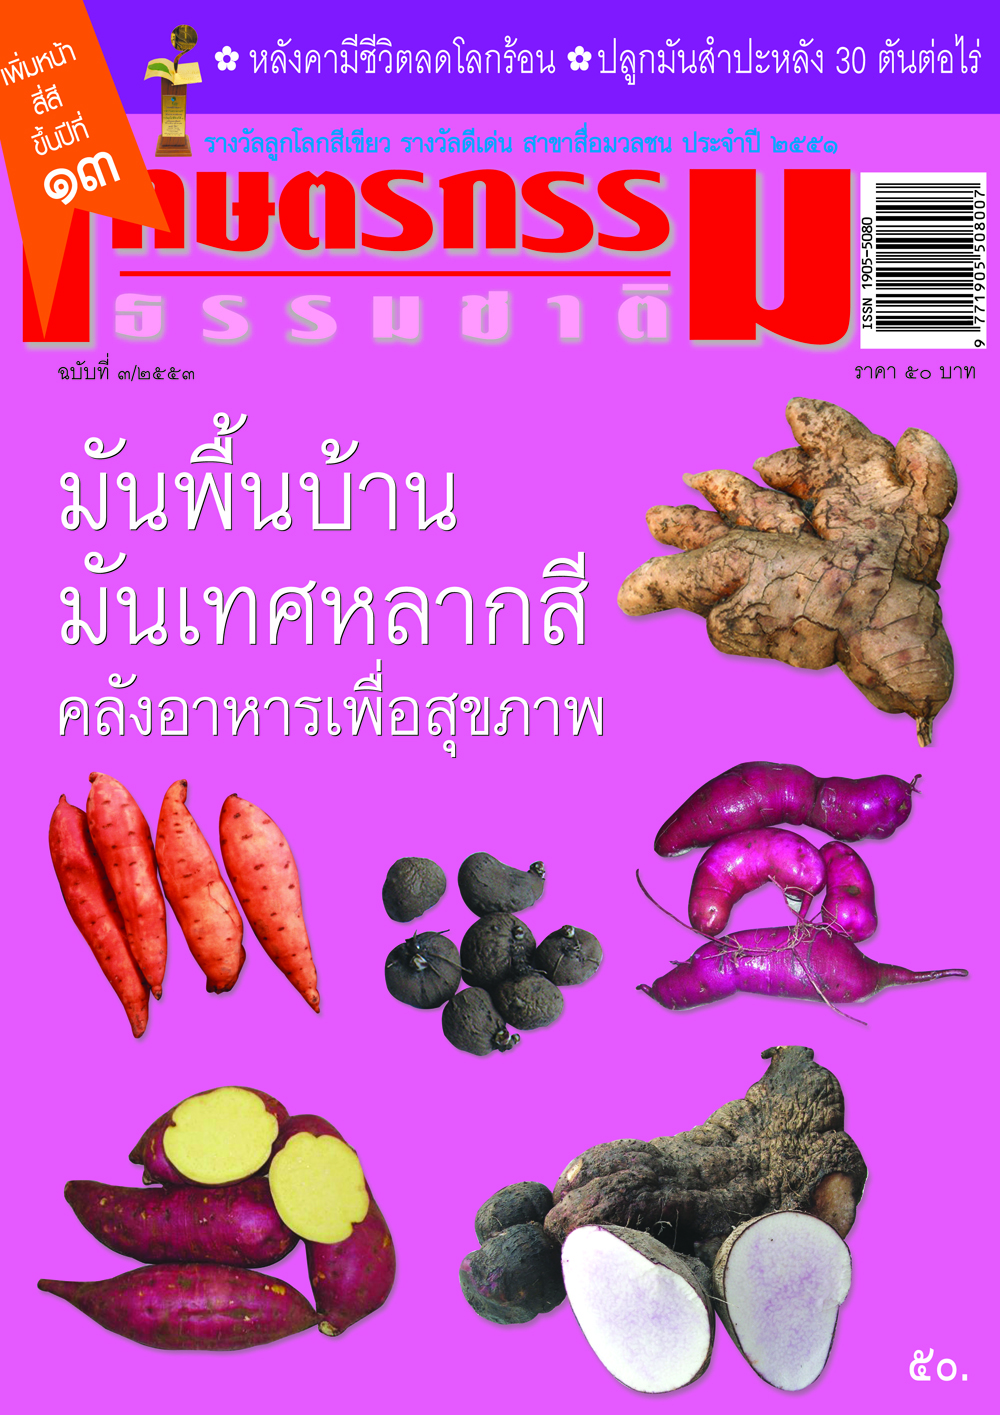 วารสารเกษตรกรรมธรรมชาติ ฉบับที่ 3/2553 มันพื้นบ้าน มันเทศหลากสี คลังอาหารเพื่อสุขภาพ